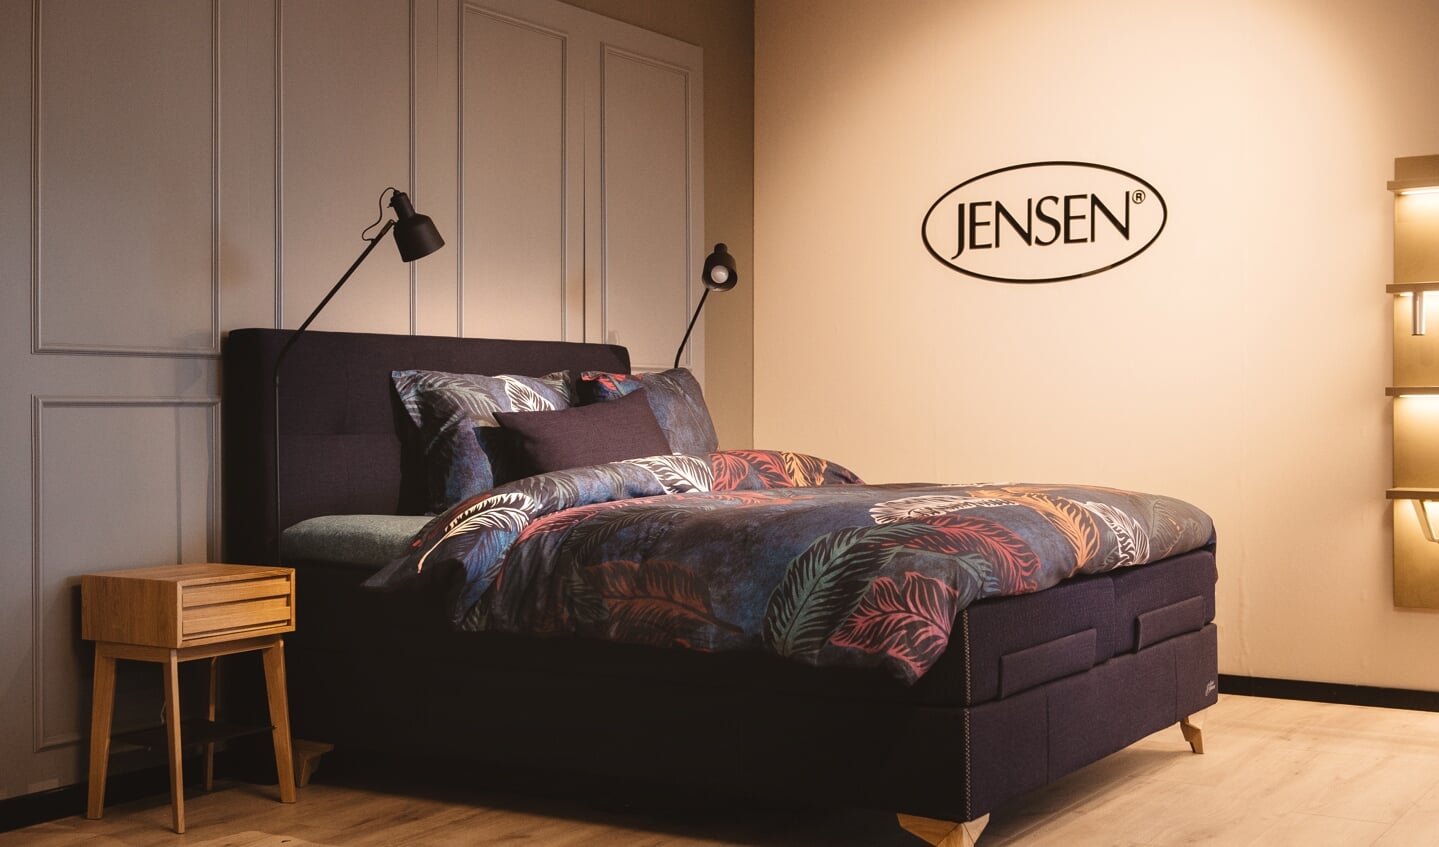 Bos Bedden Nijverdal heeft nu ook een studio van het merk Jensen.